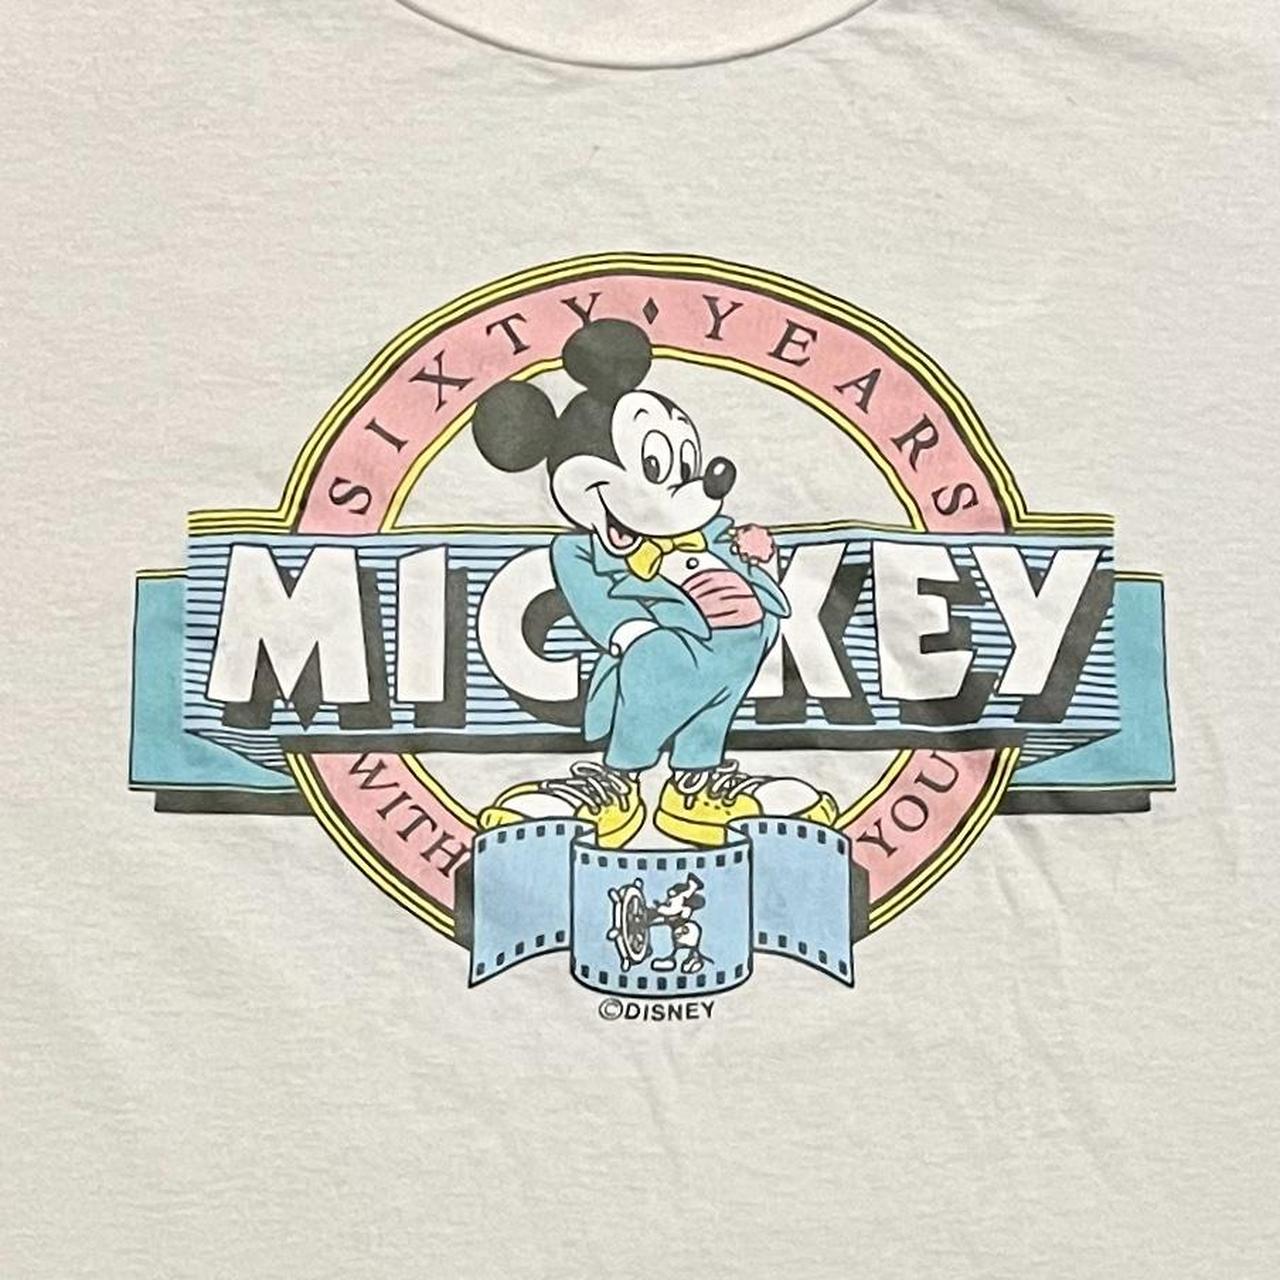 Vintage Los Angeles Lakers basketball Disney Mickey - Depop